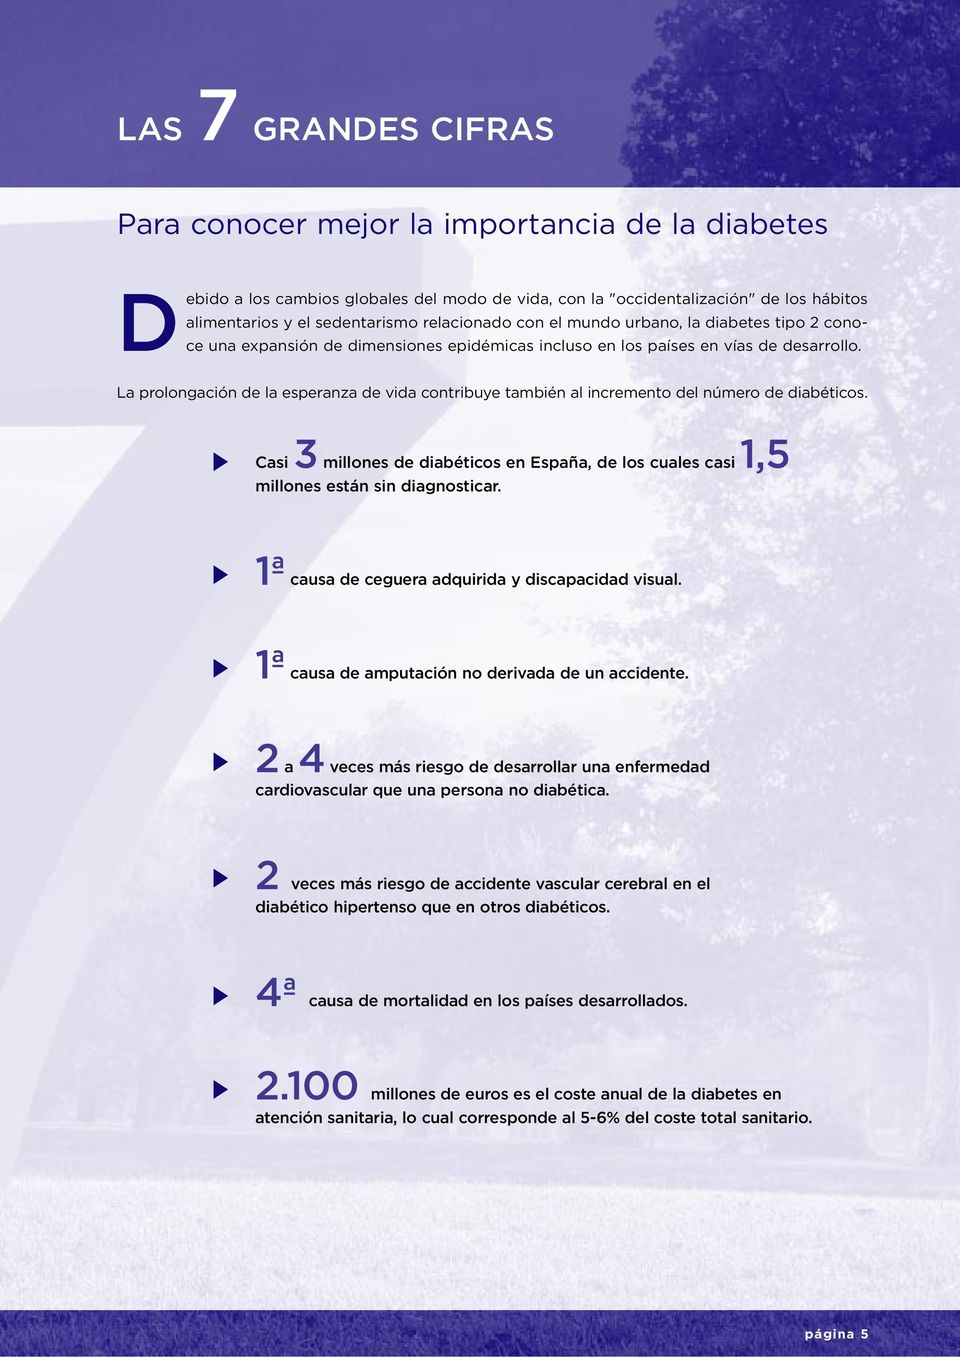 La prolongación de la esperanza de vida contribuye también al incremento del número de diabéticos. Casi 3 millones de diabéticos en España, de los cuales casi 1,5 millones están sin diagnosticar.